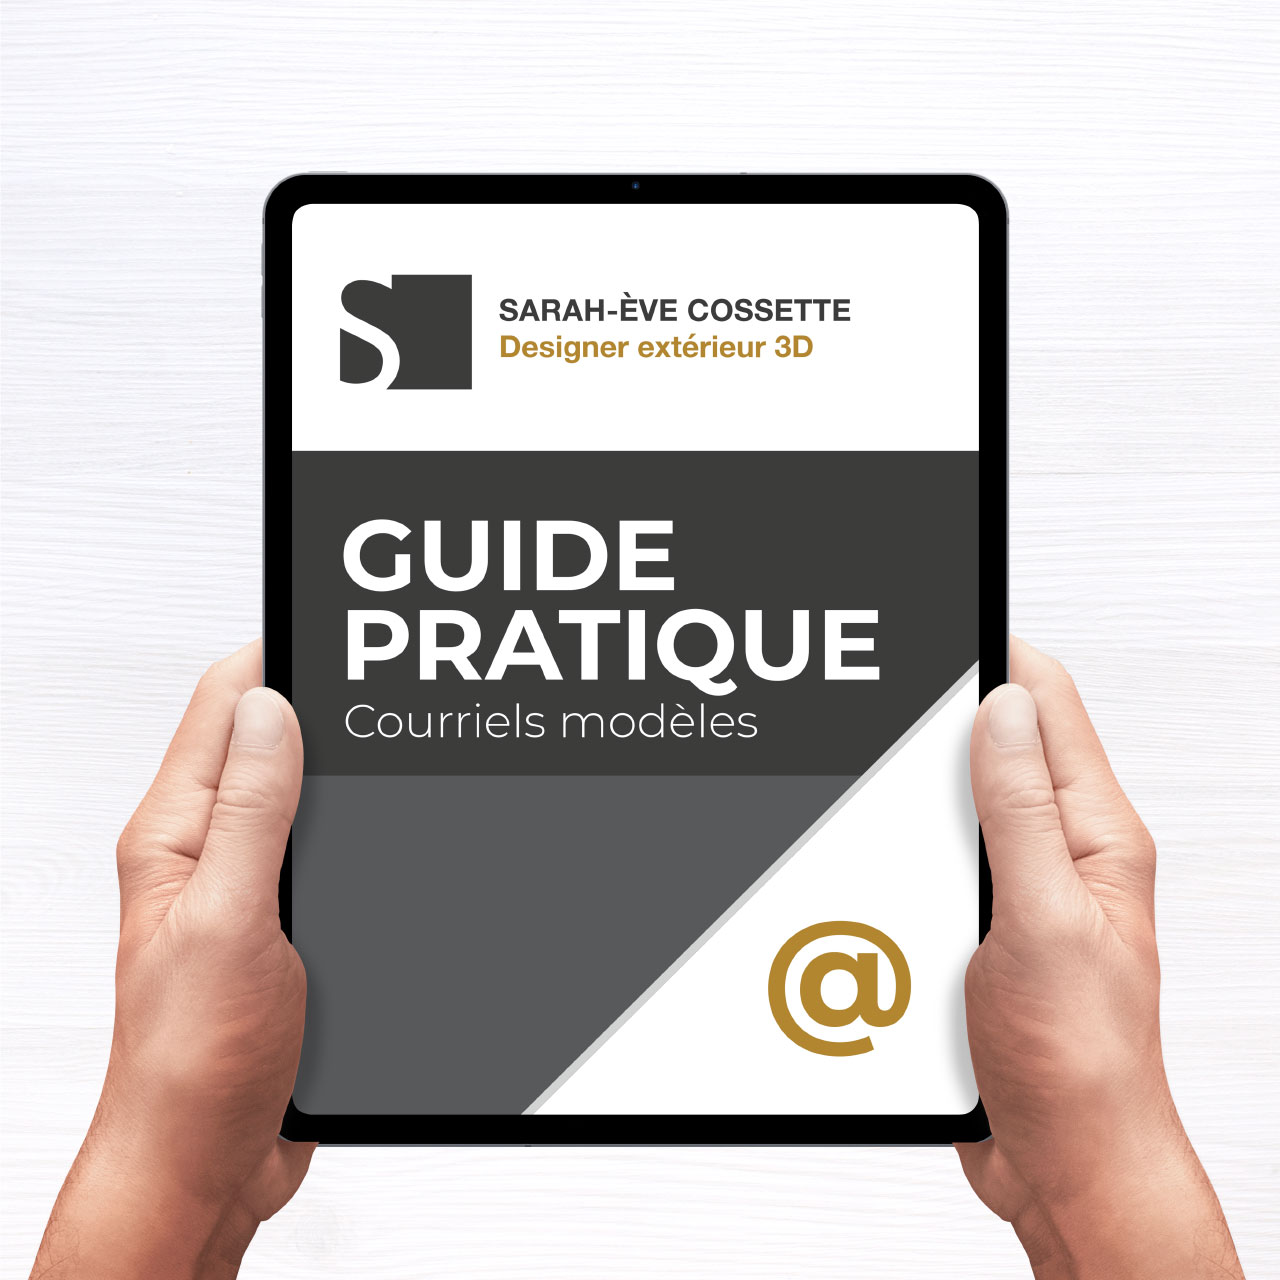 Guide pratique - Courriels modeles Embleme accueil